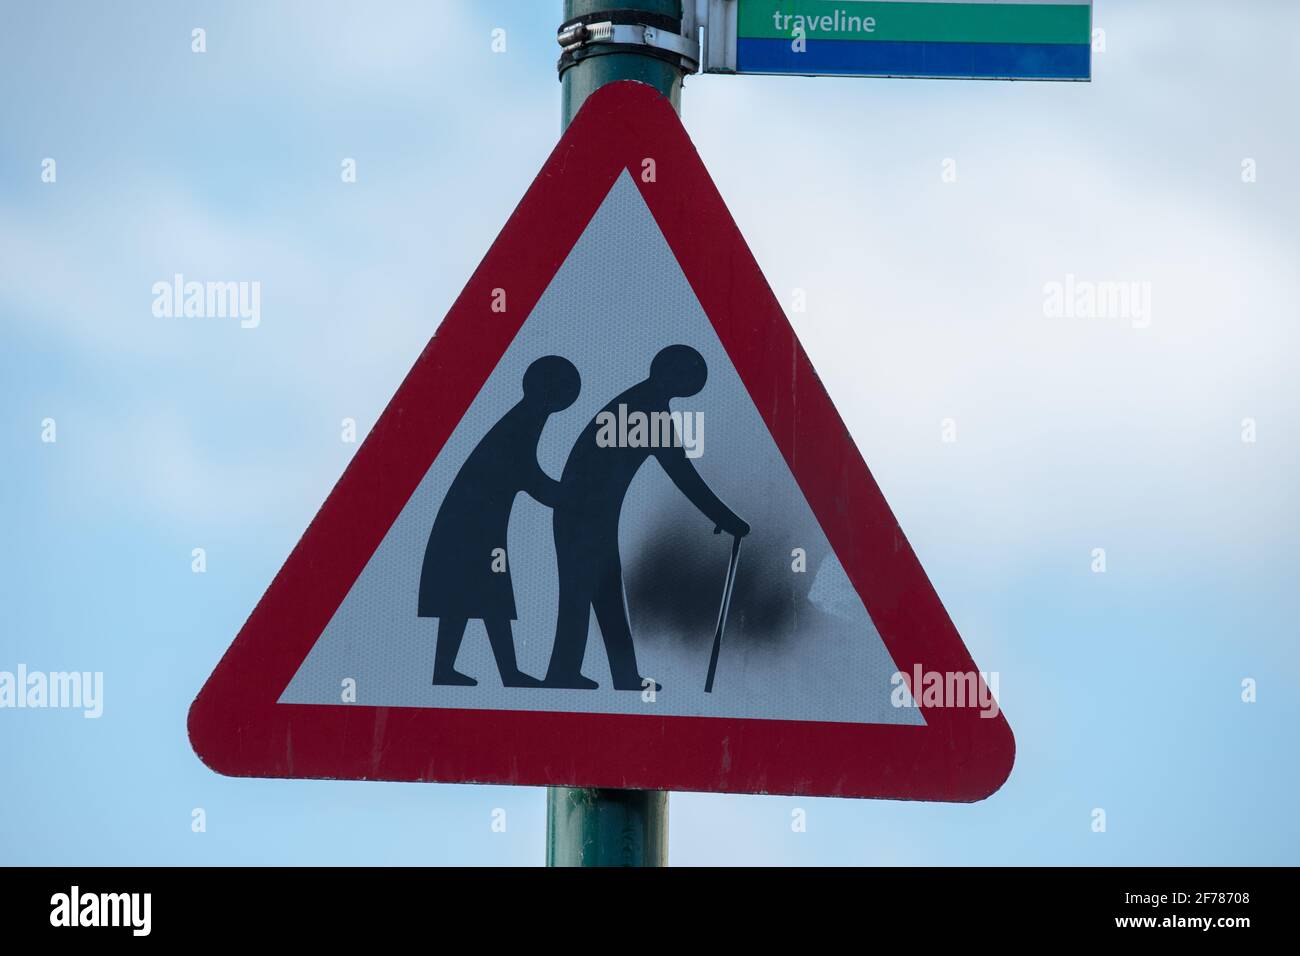 Personas mayores que cruzan la señal triangular de la carretera de advertencia. Foto de stock